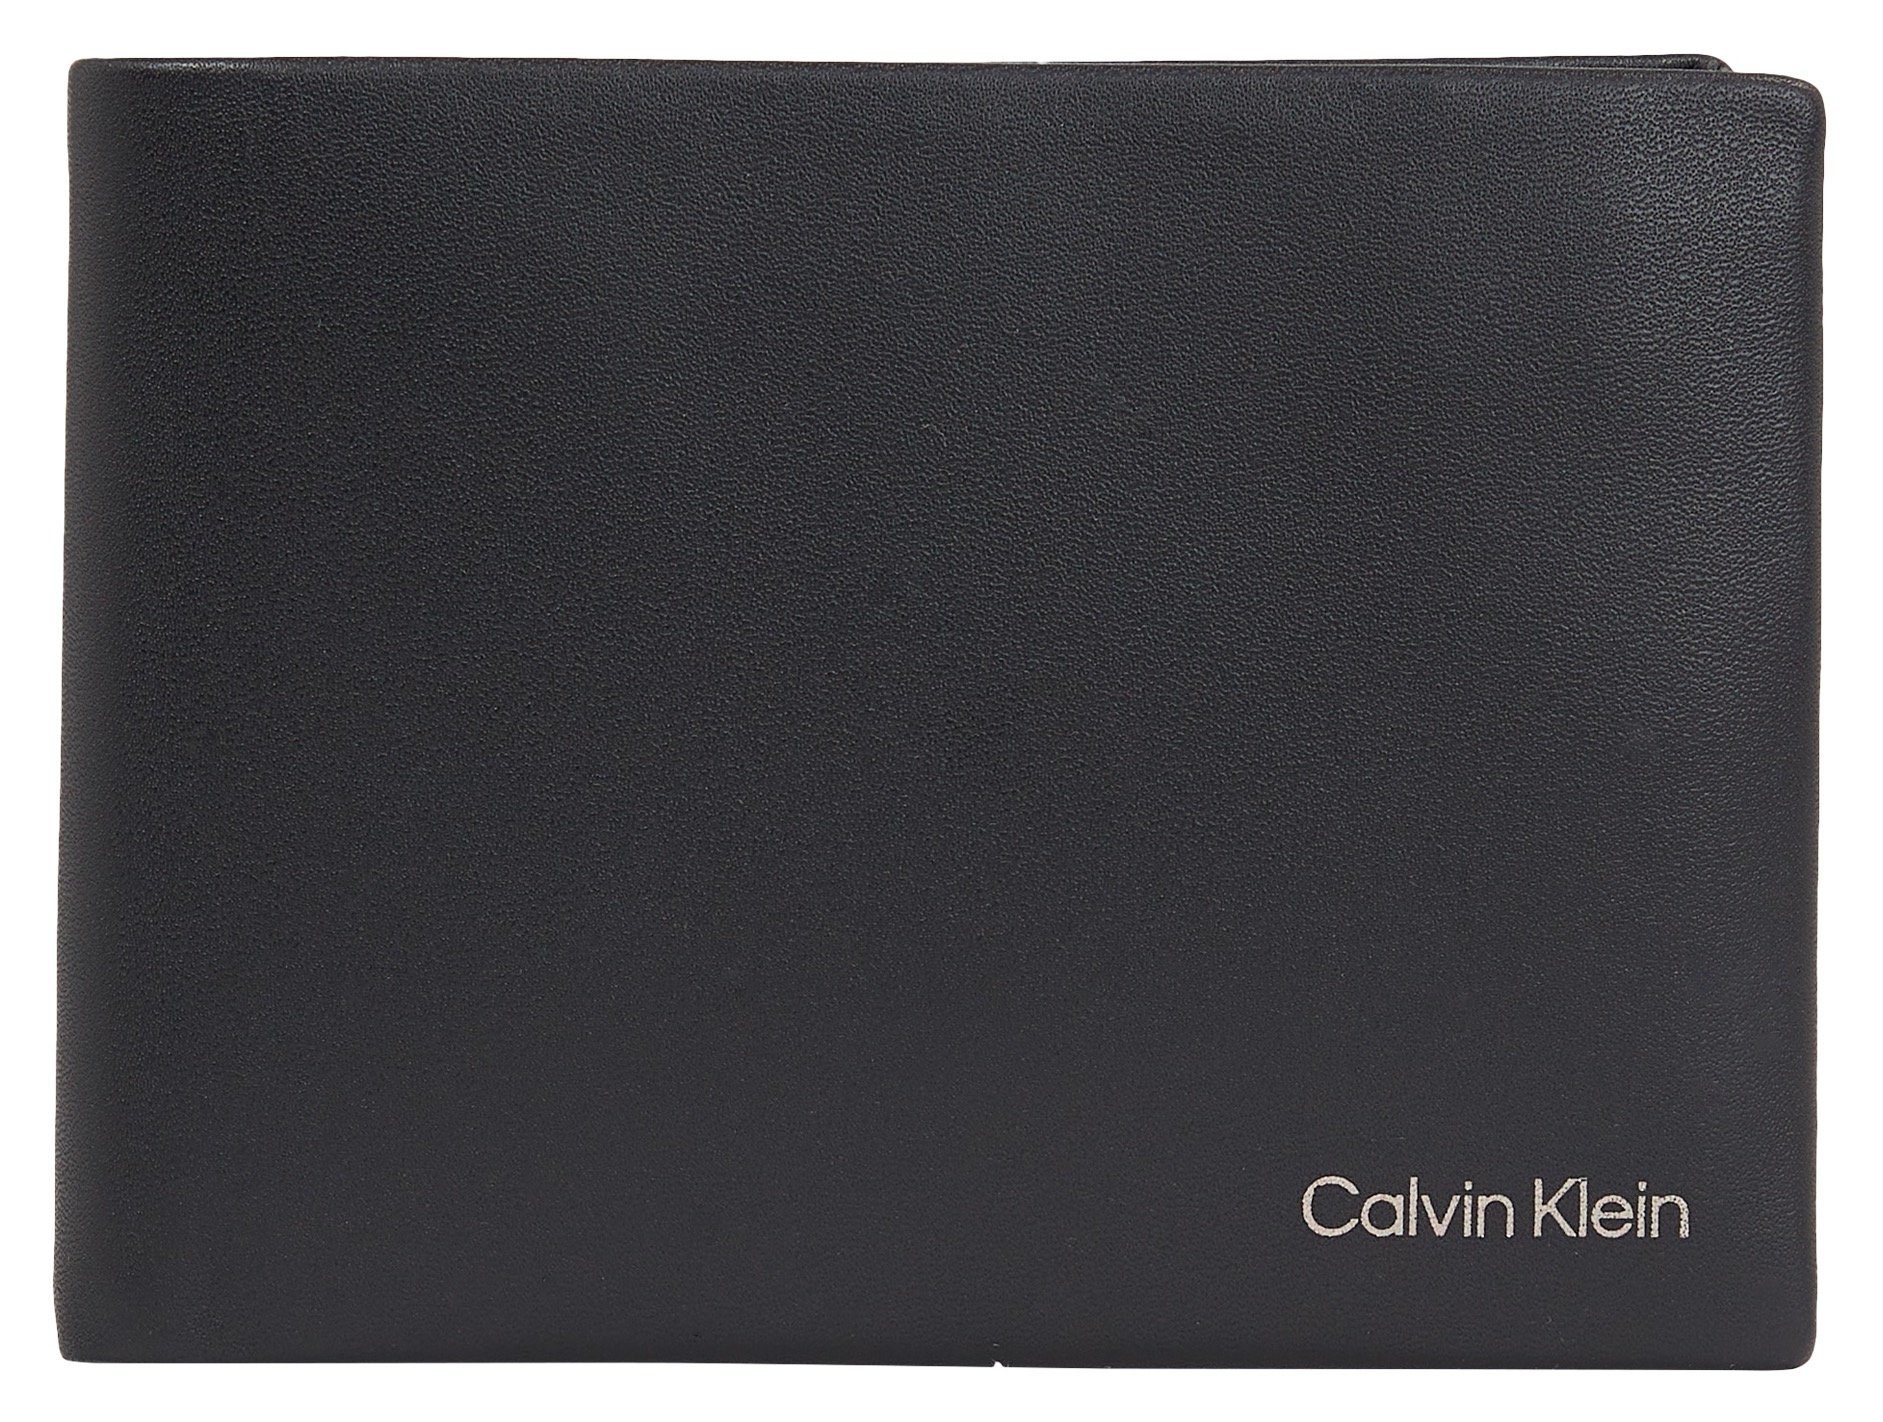 [Übersee-Standard] Calvin Klein Geldbörse CK schlichtem L, CONCISE 5CC BIFOLD in W/COIN Stil